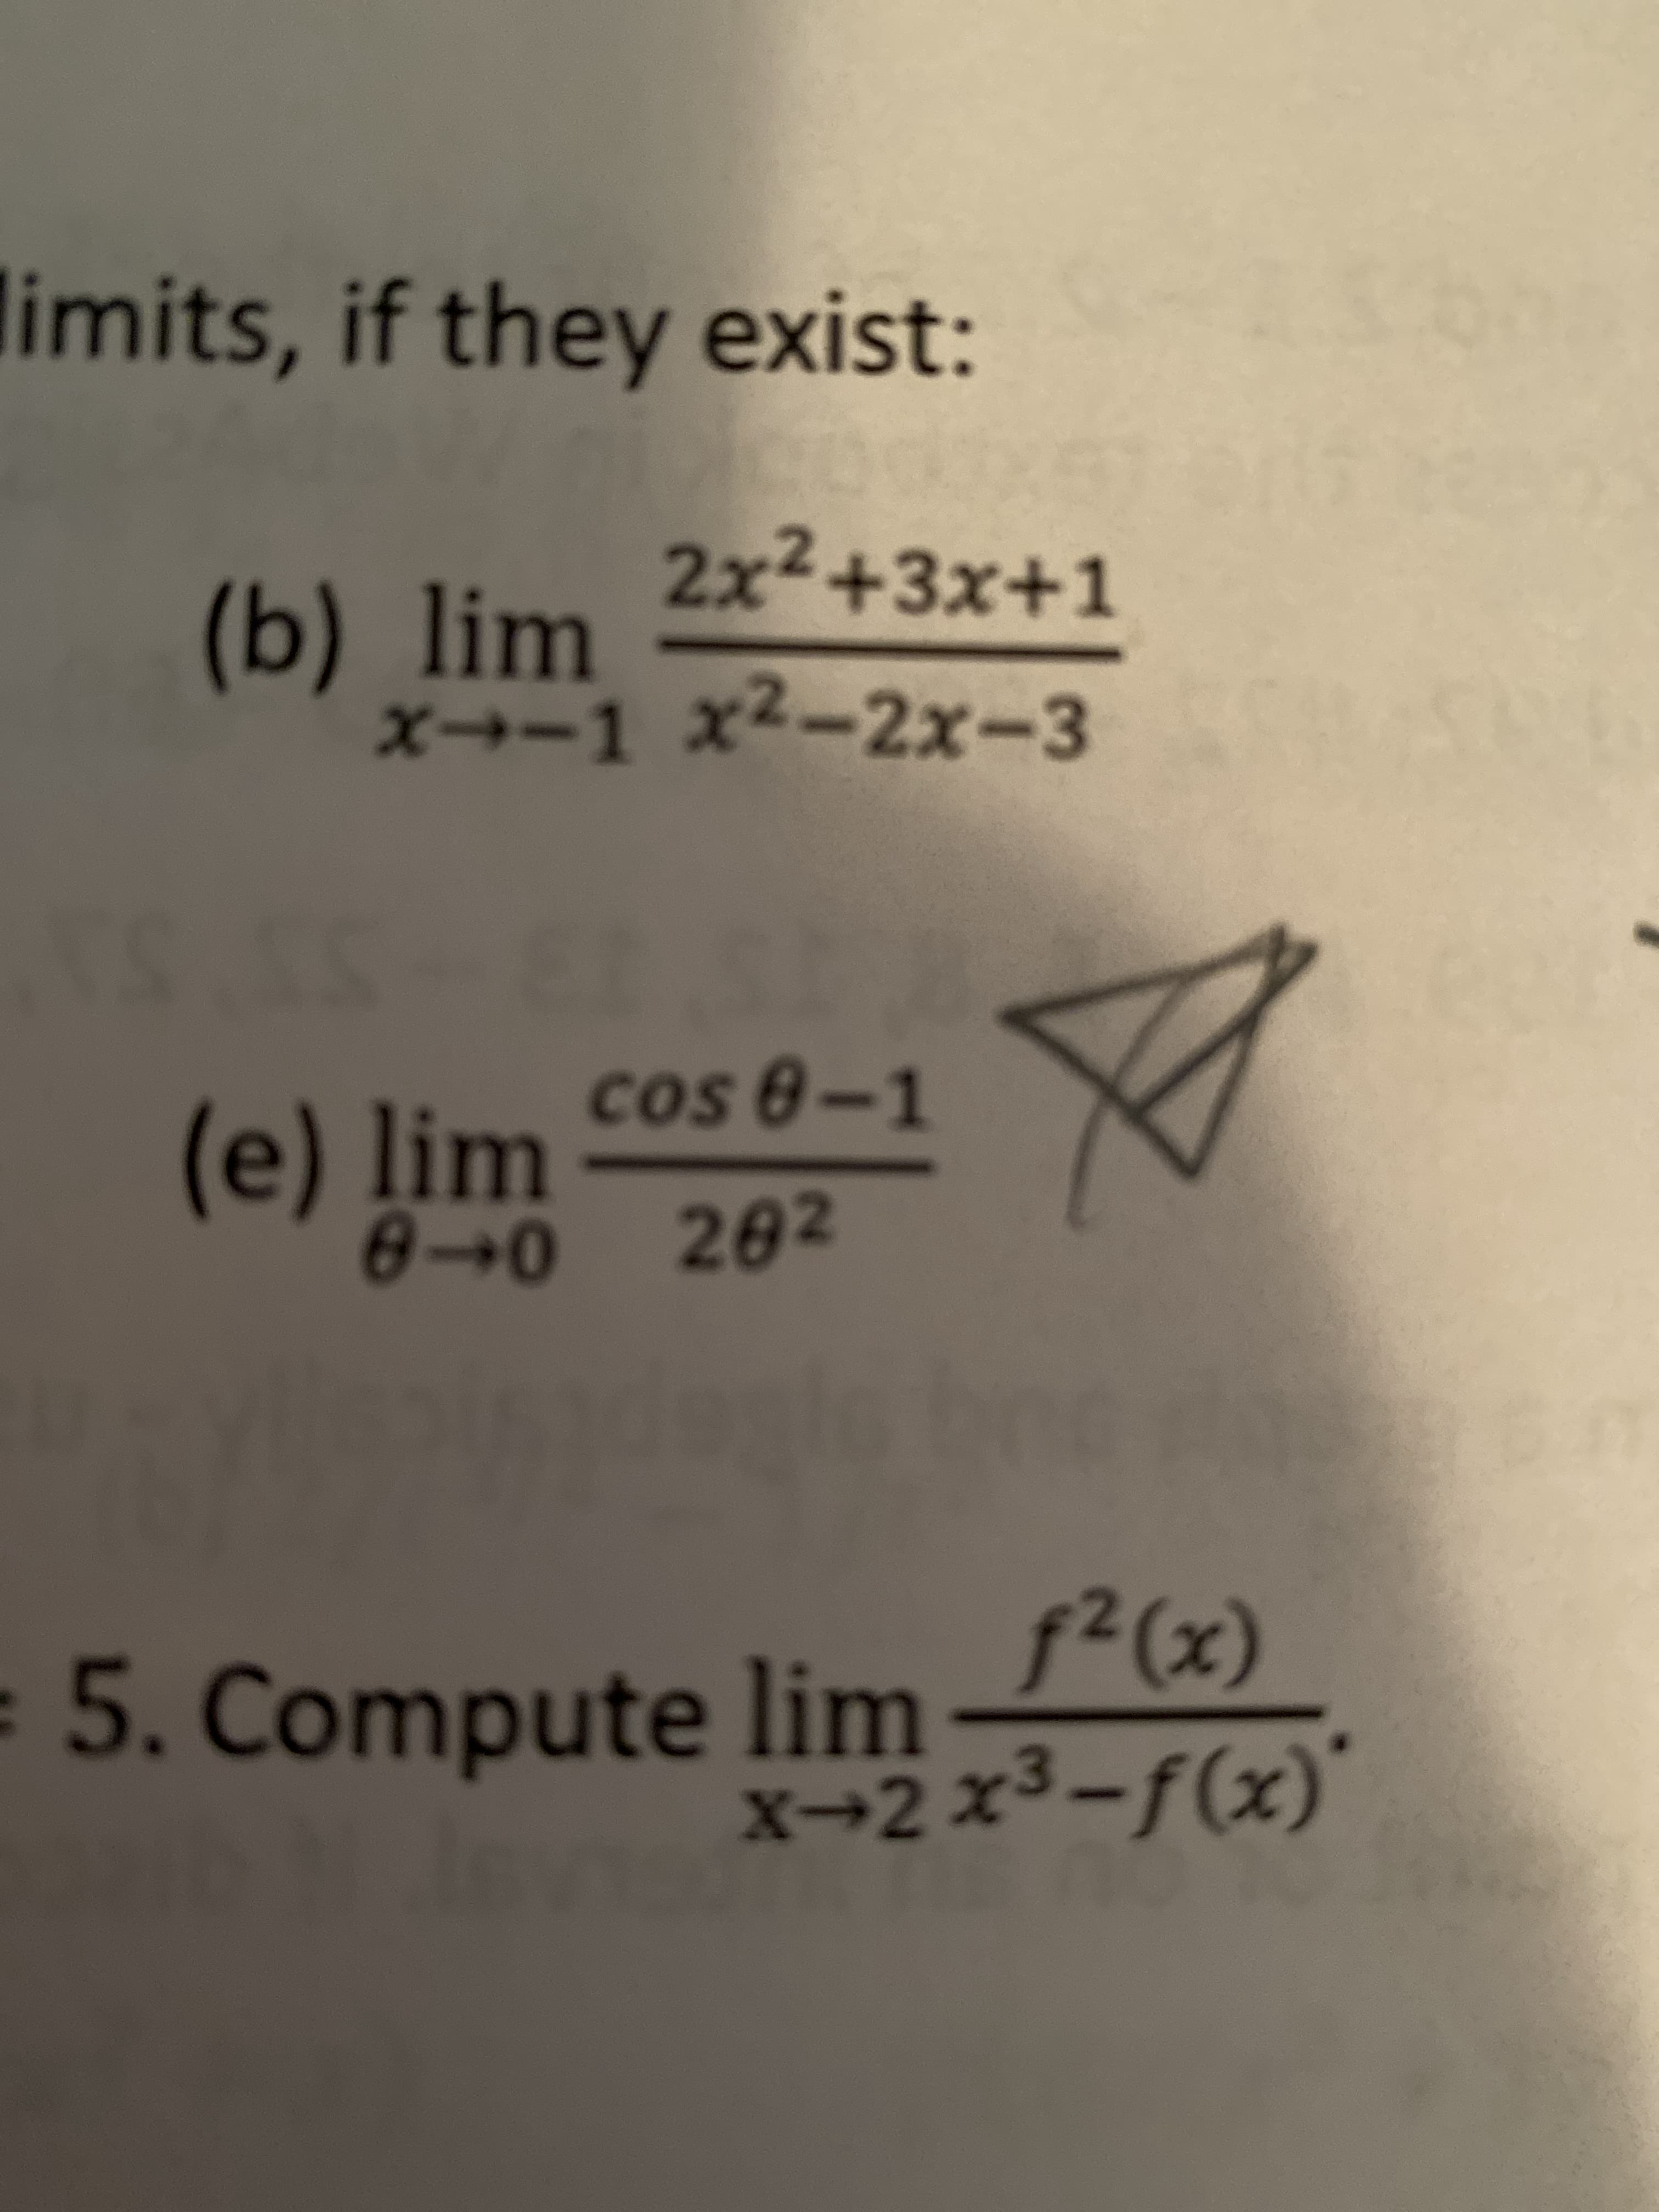 cos 8-1
(e) lim
0→0 202
